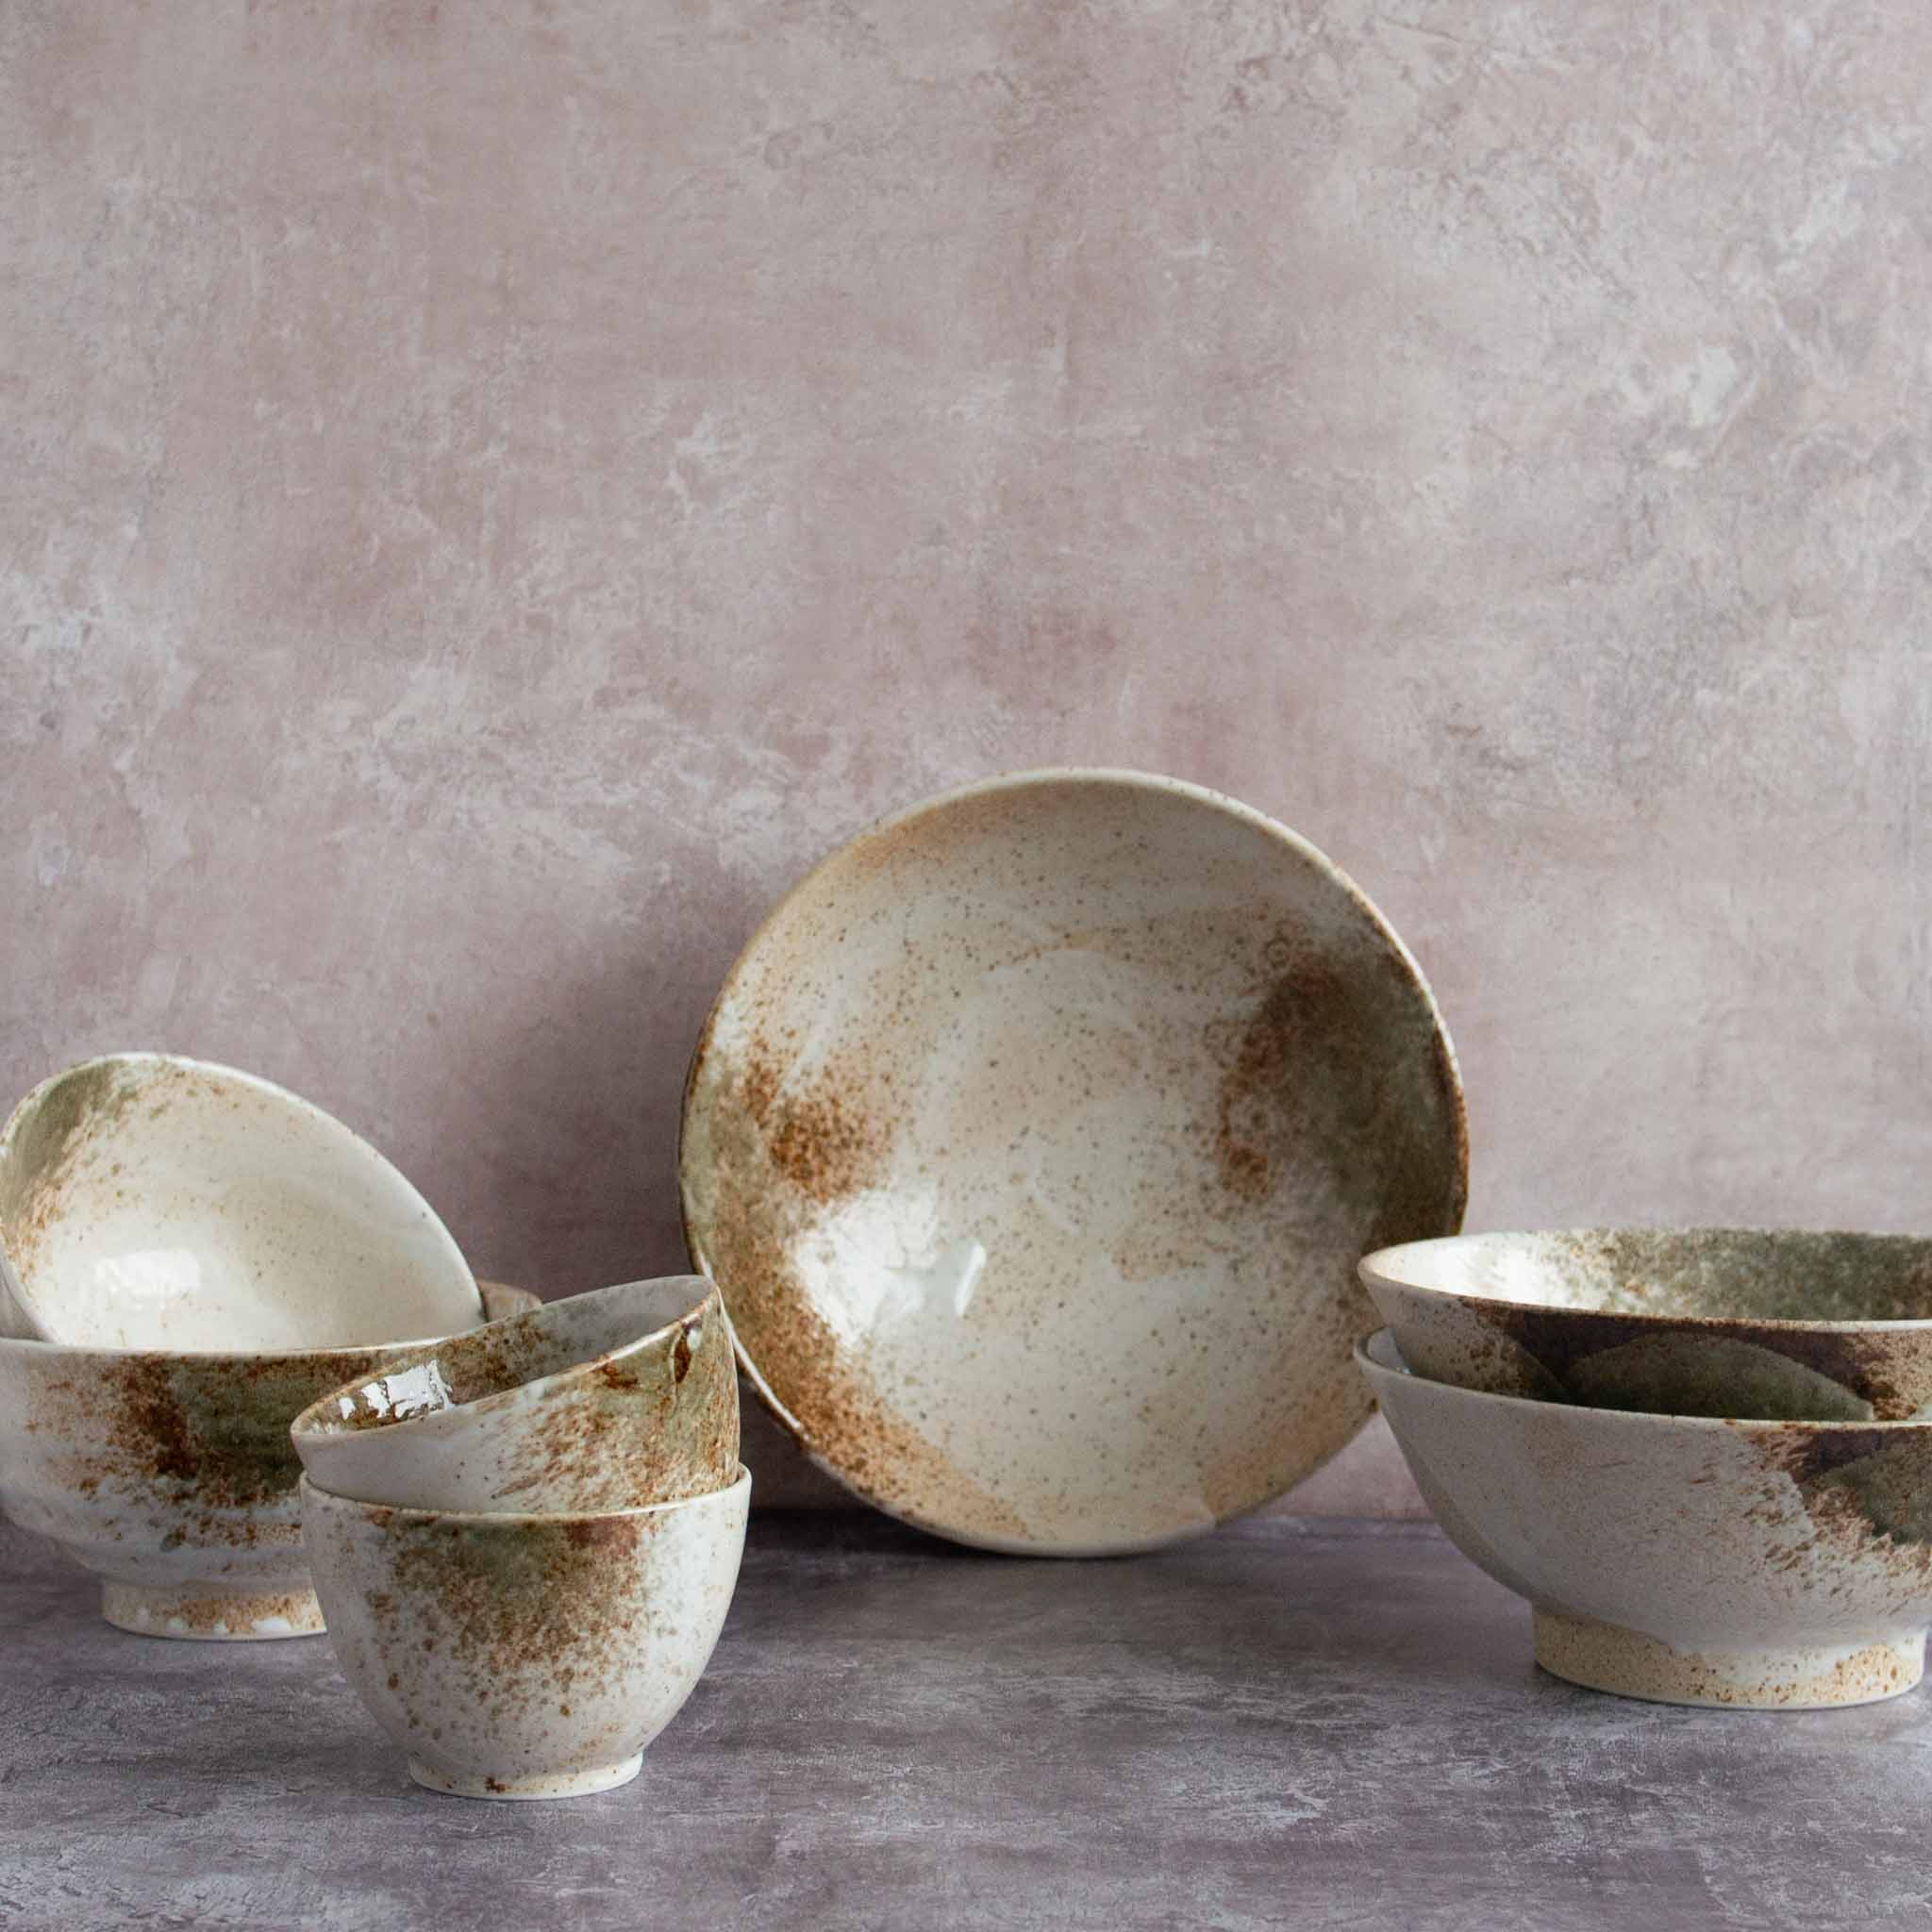 Kiji Stoneware & Ceramics Yukishino Matcha Bowl Set Tableware Japanese Tableware Japanese Food